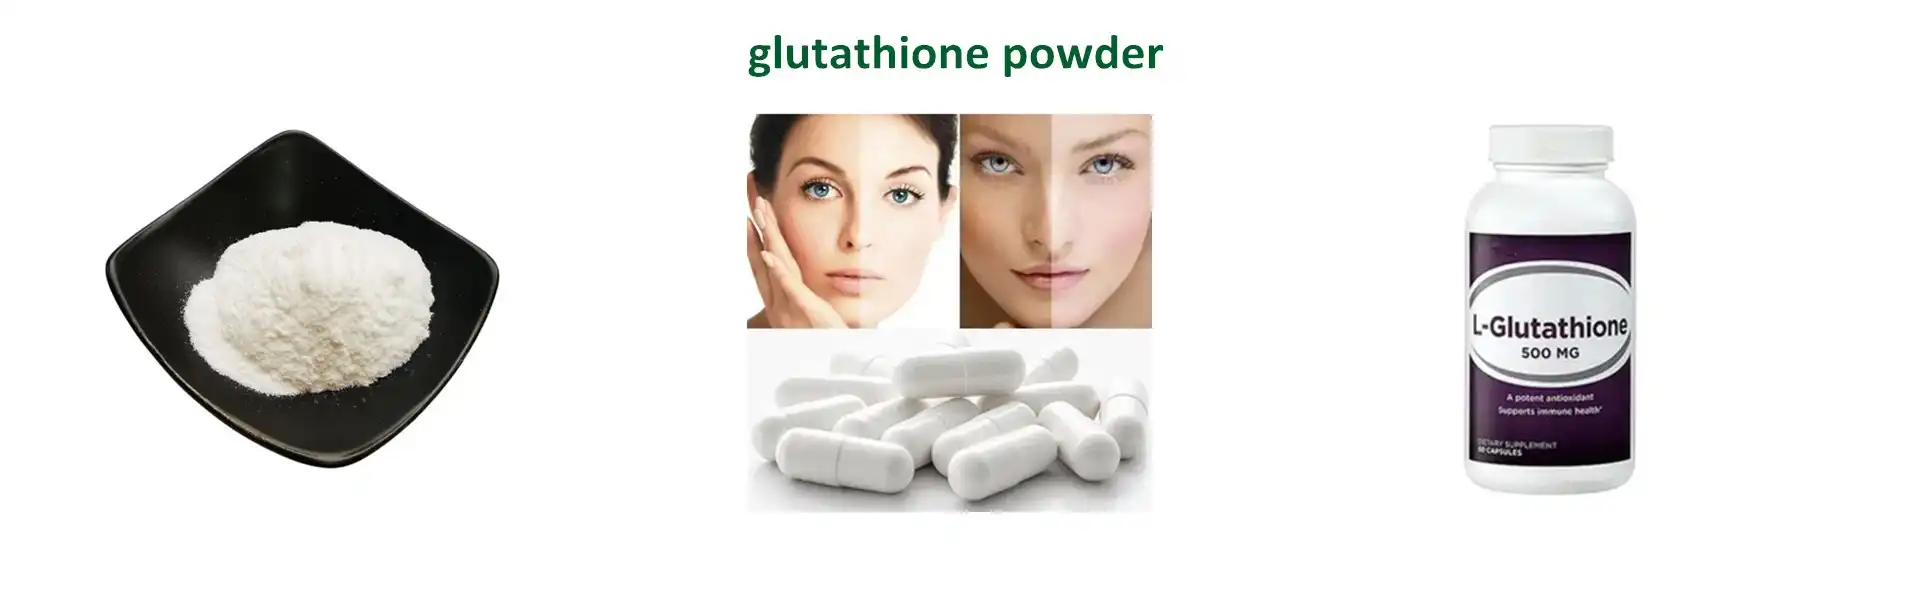 Glutathione Powder